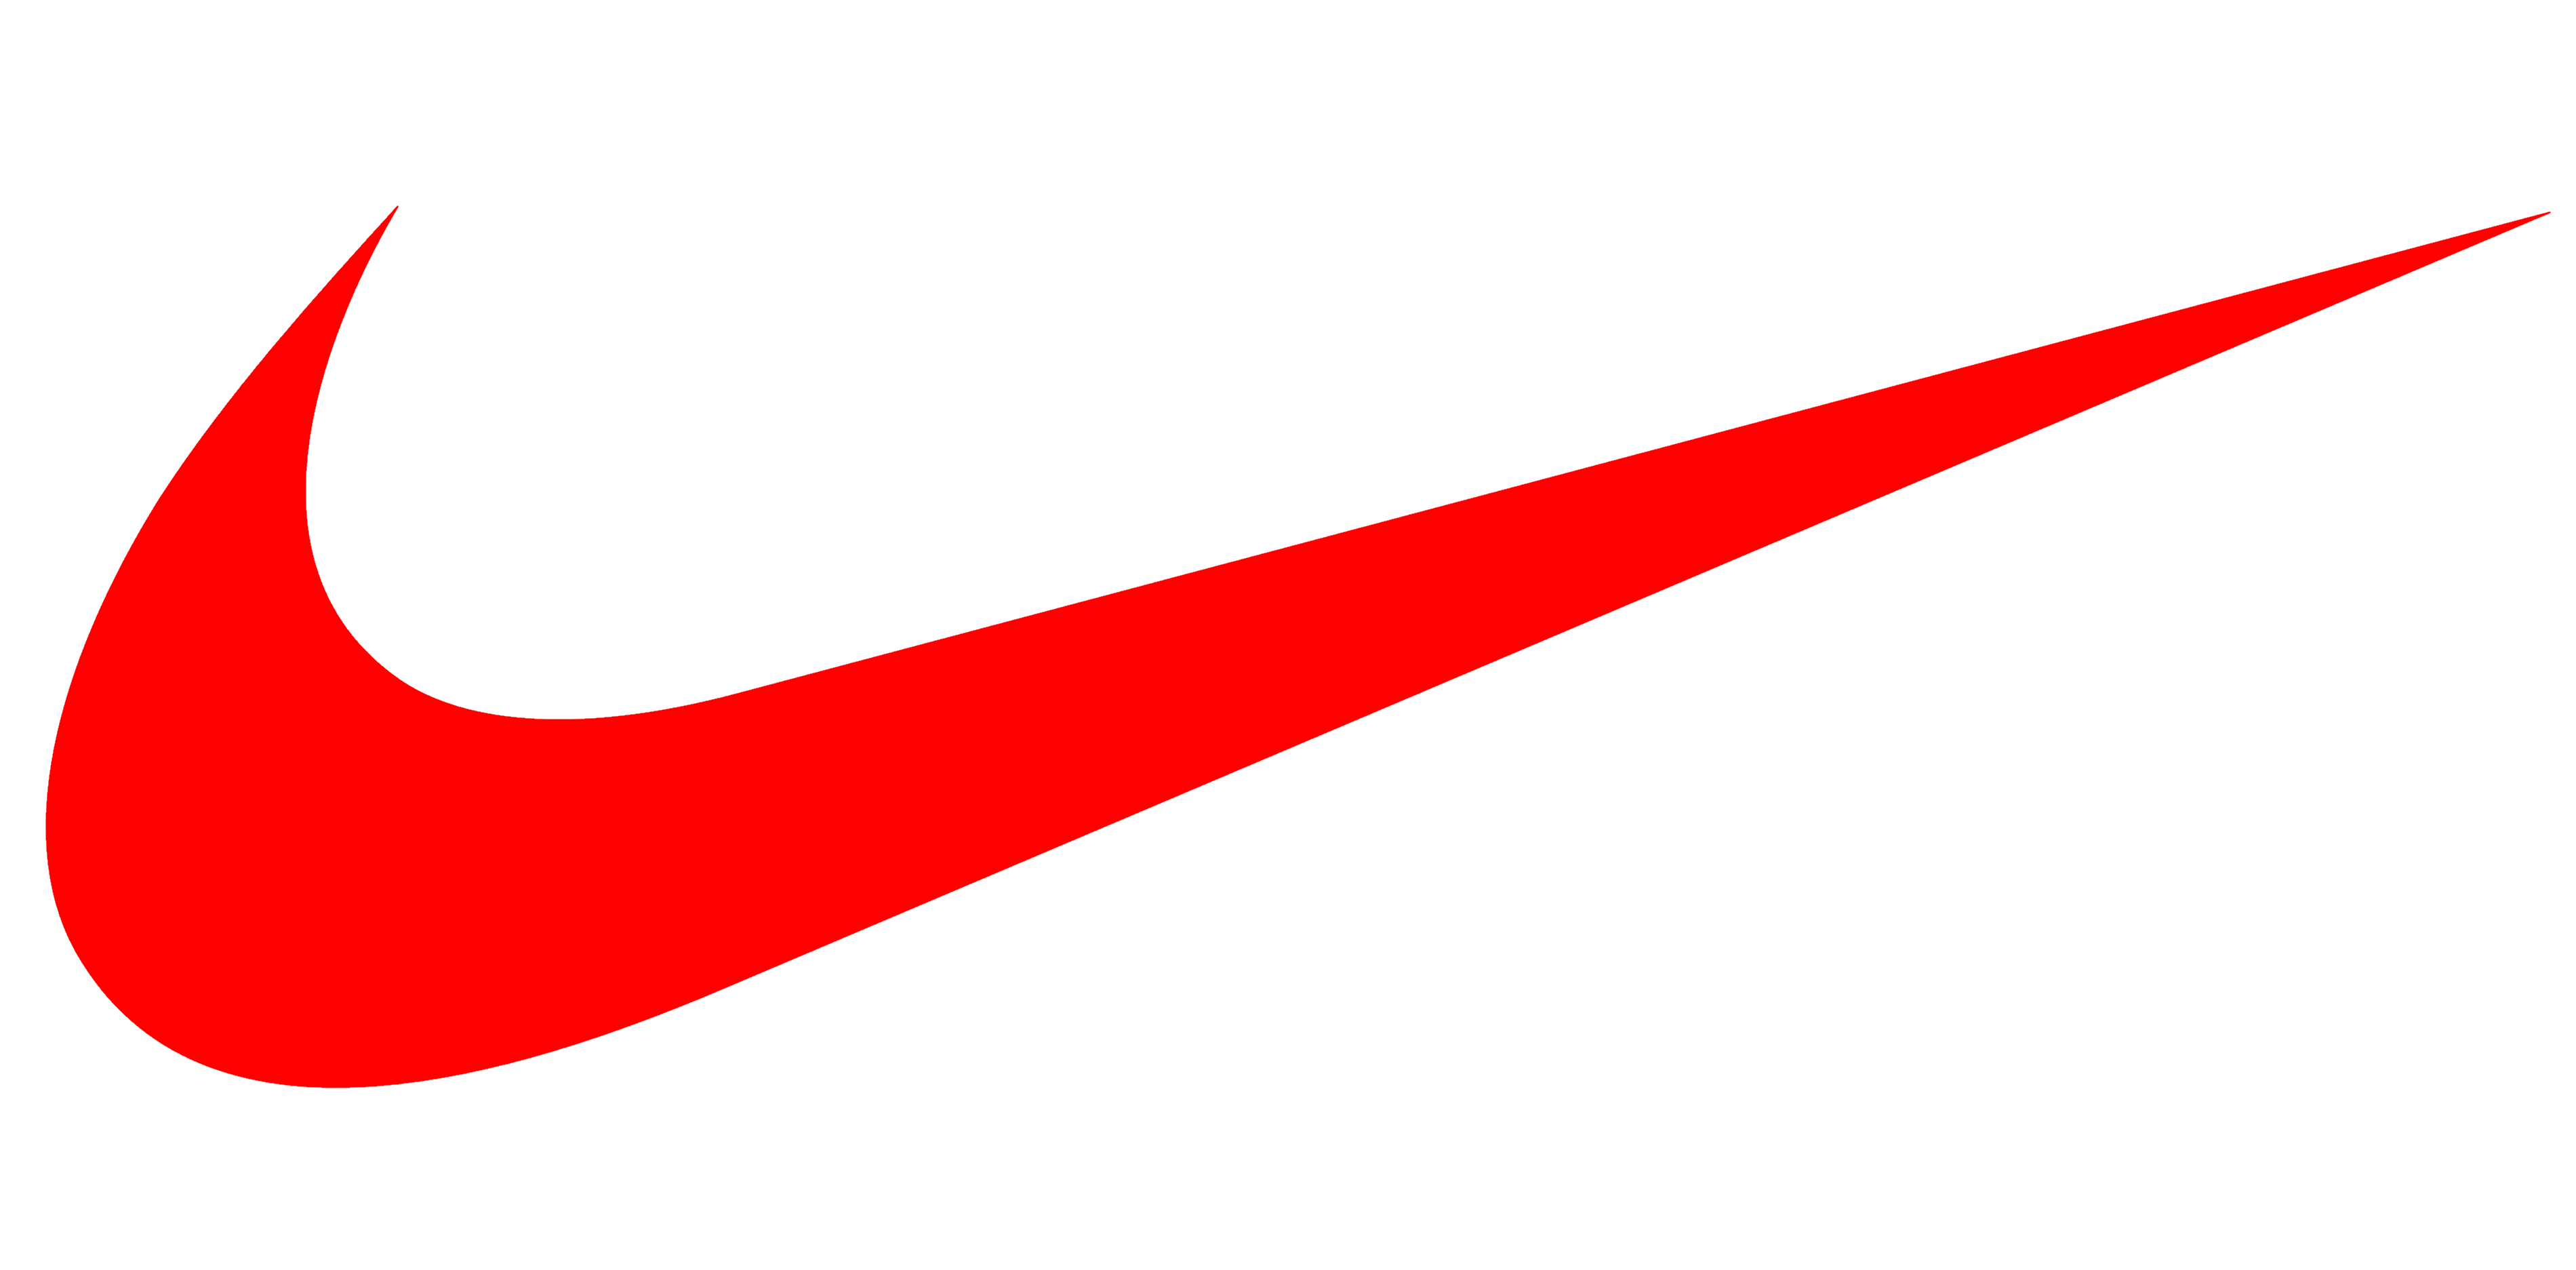 Download High Quality Nike Swoosh Logo Svg Transparent Png Images Art